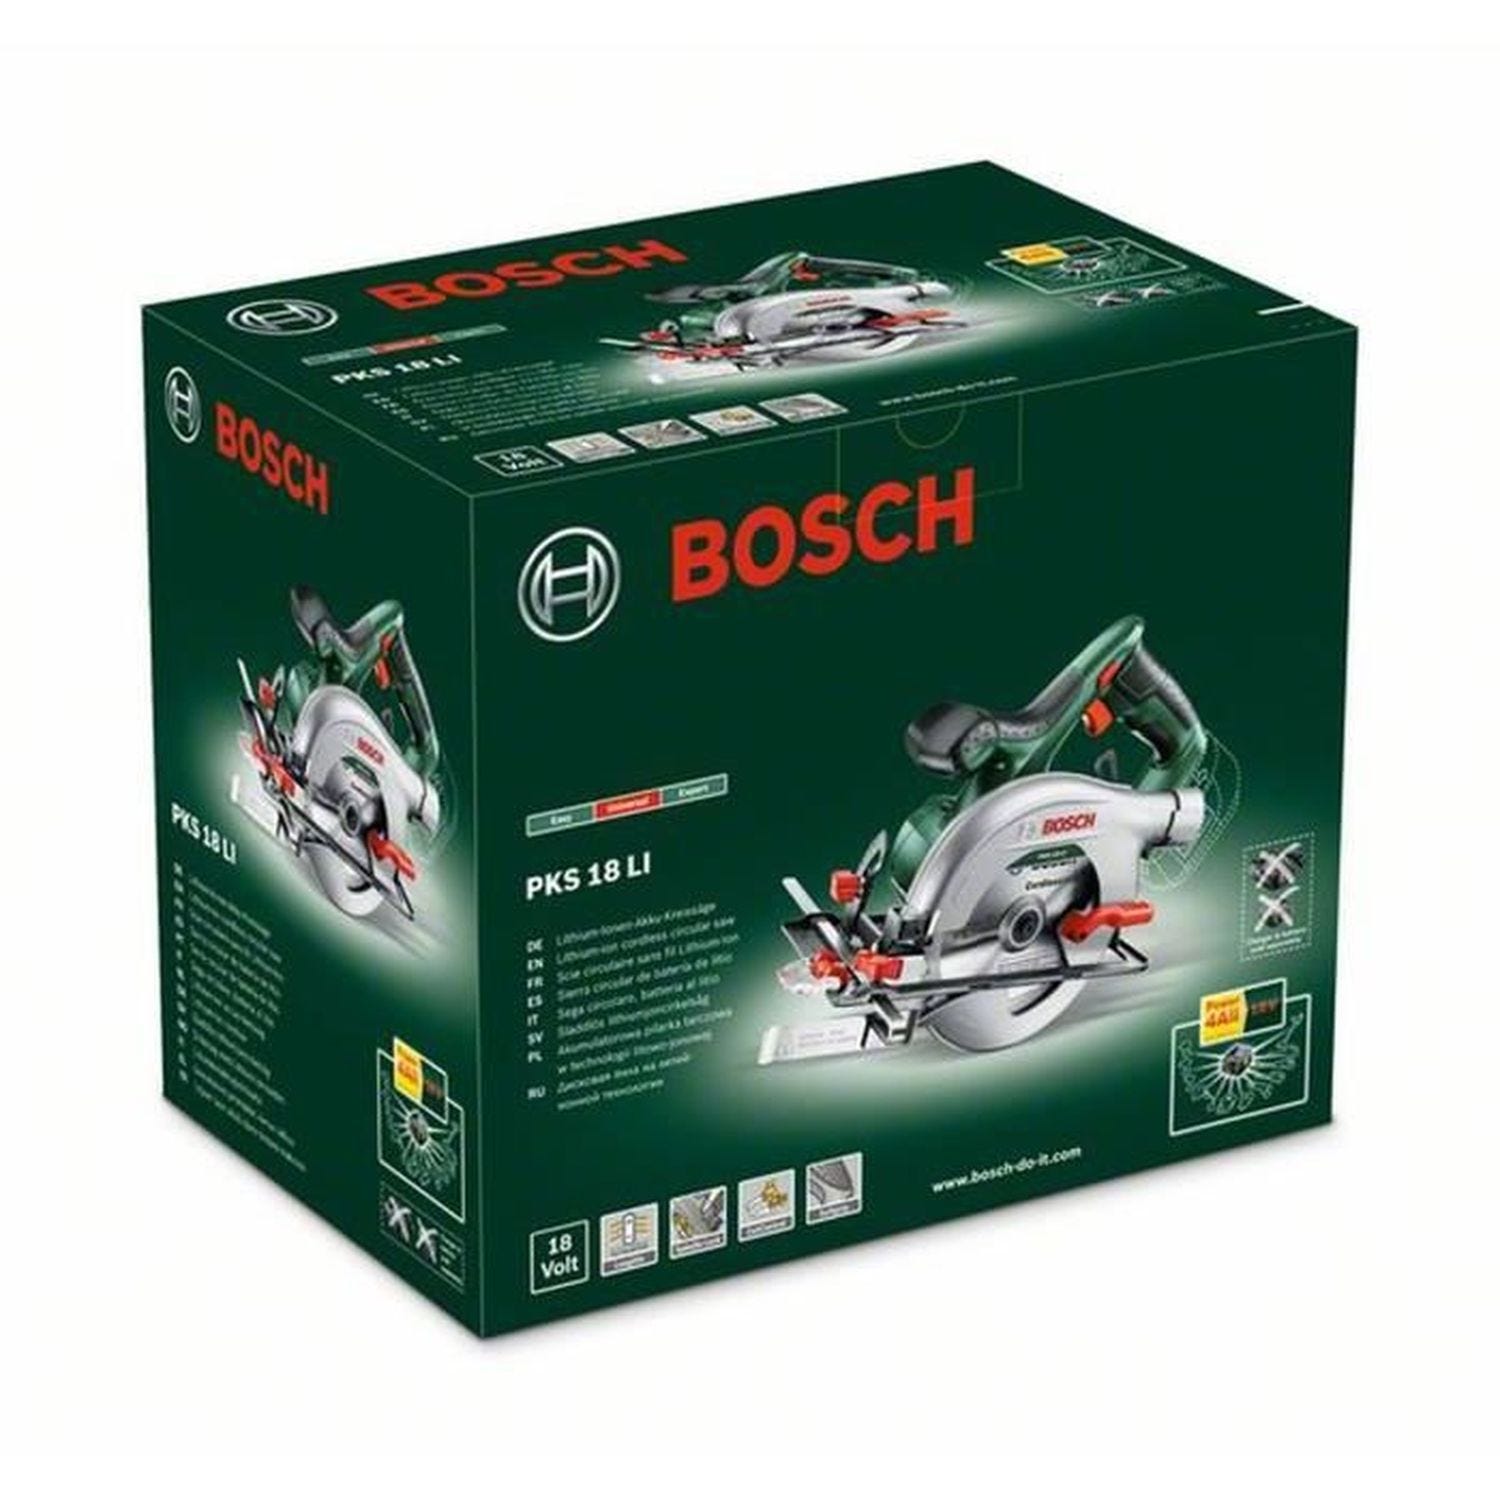 Scie circulaire sans-fil Bosch - PKS 18 Li (sans batterie ni chargeur) - Bosch 1